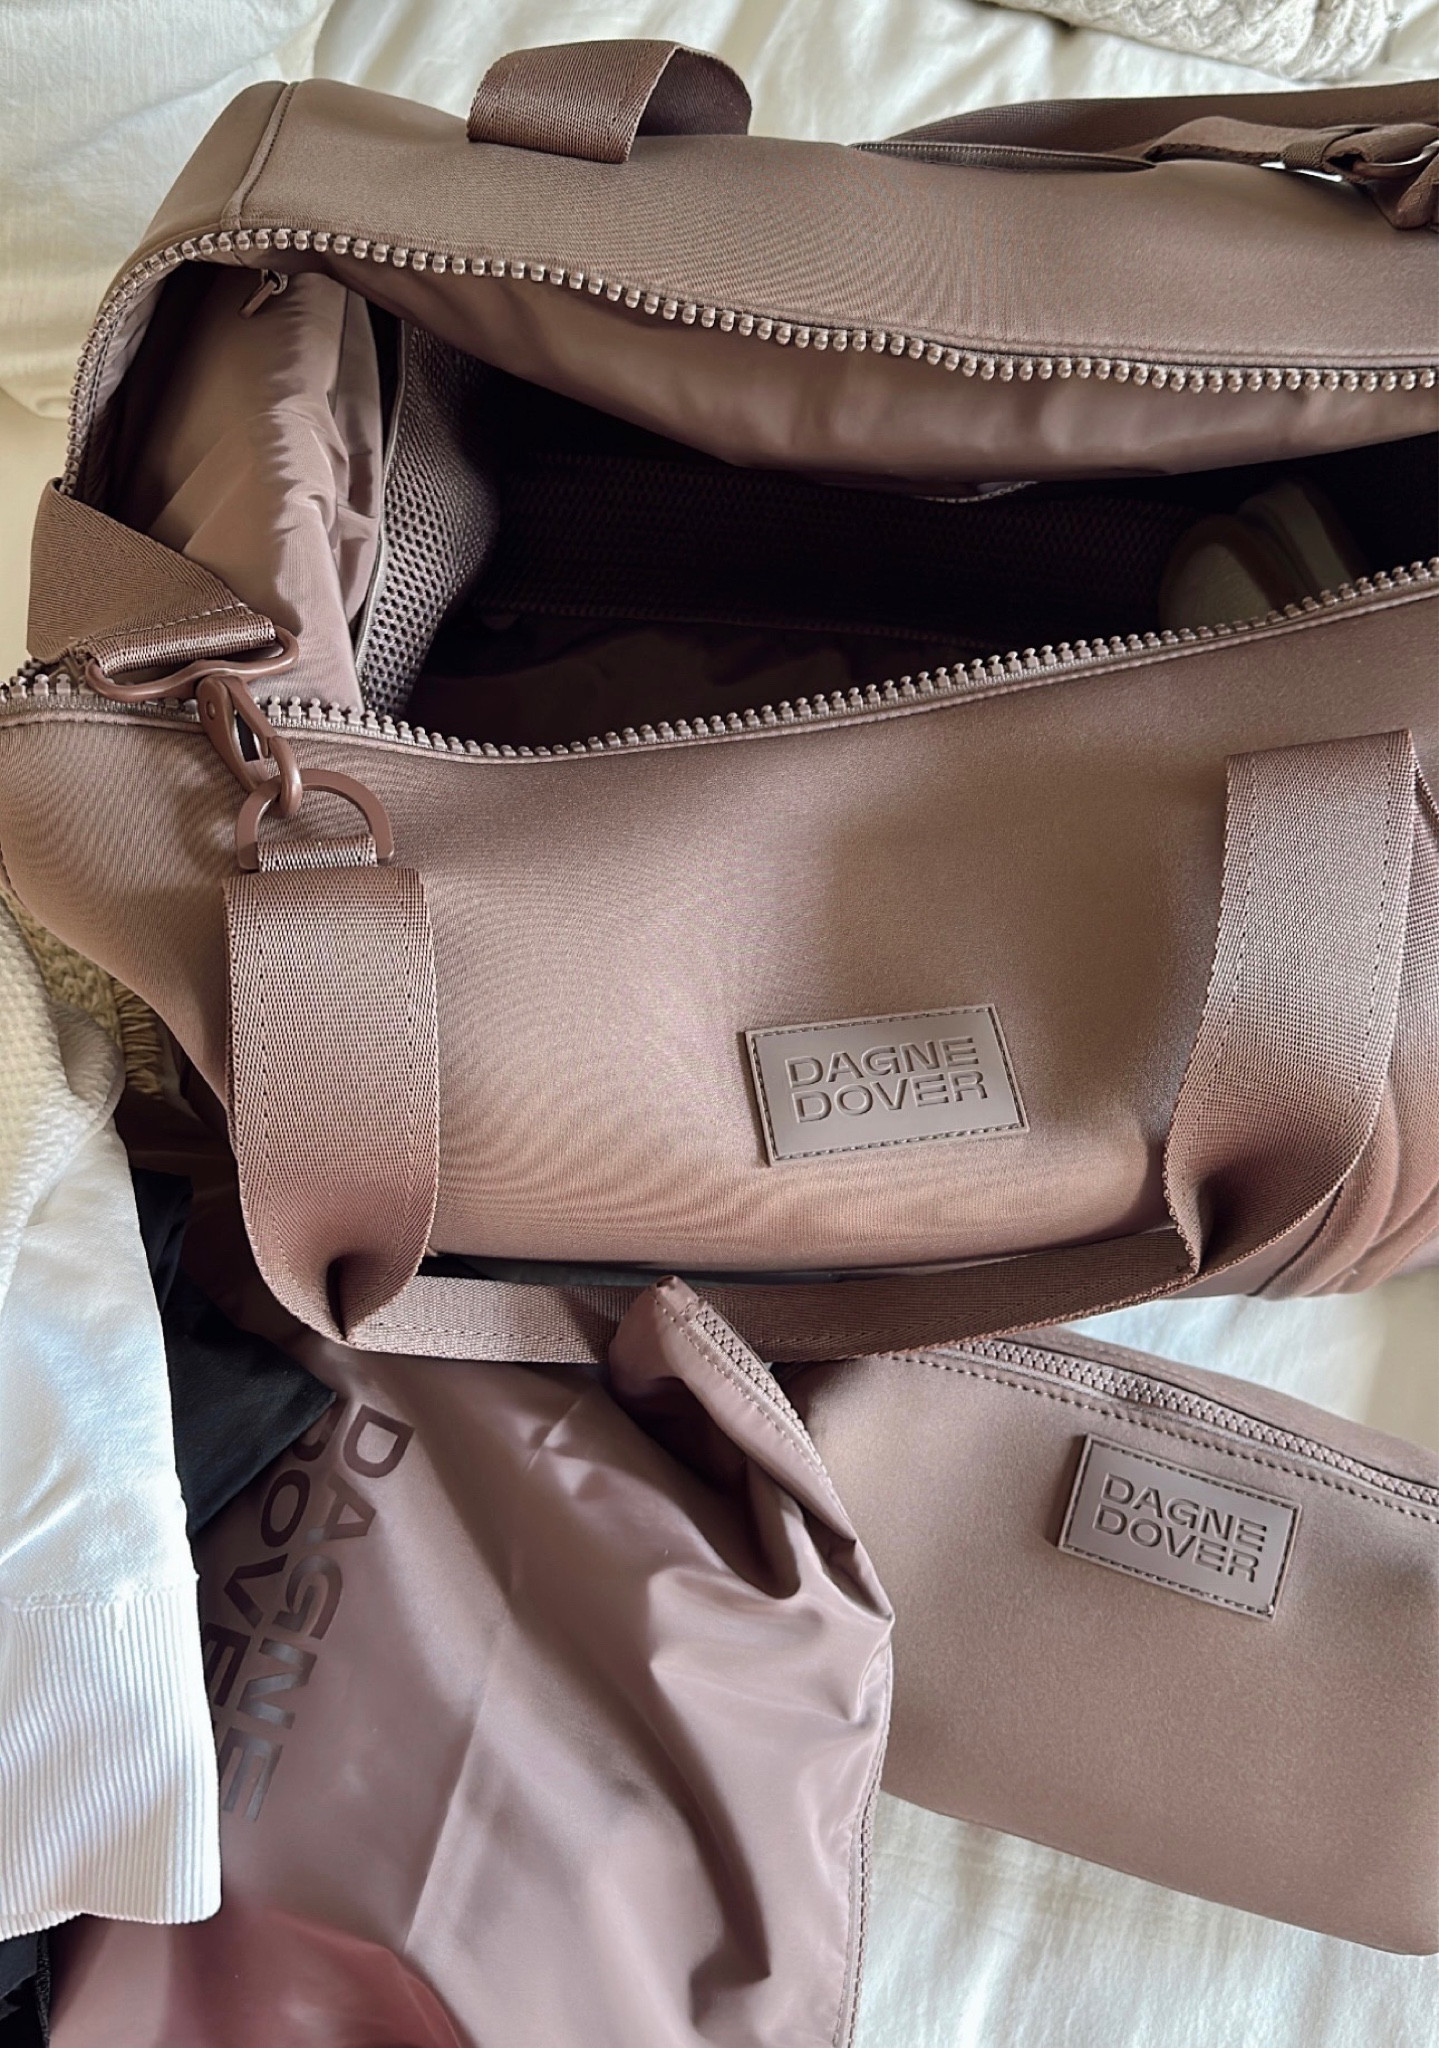 Dagne Dover is hosting 20% kits: Backpacks, mini bags